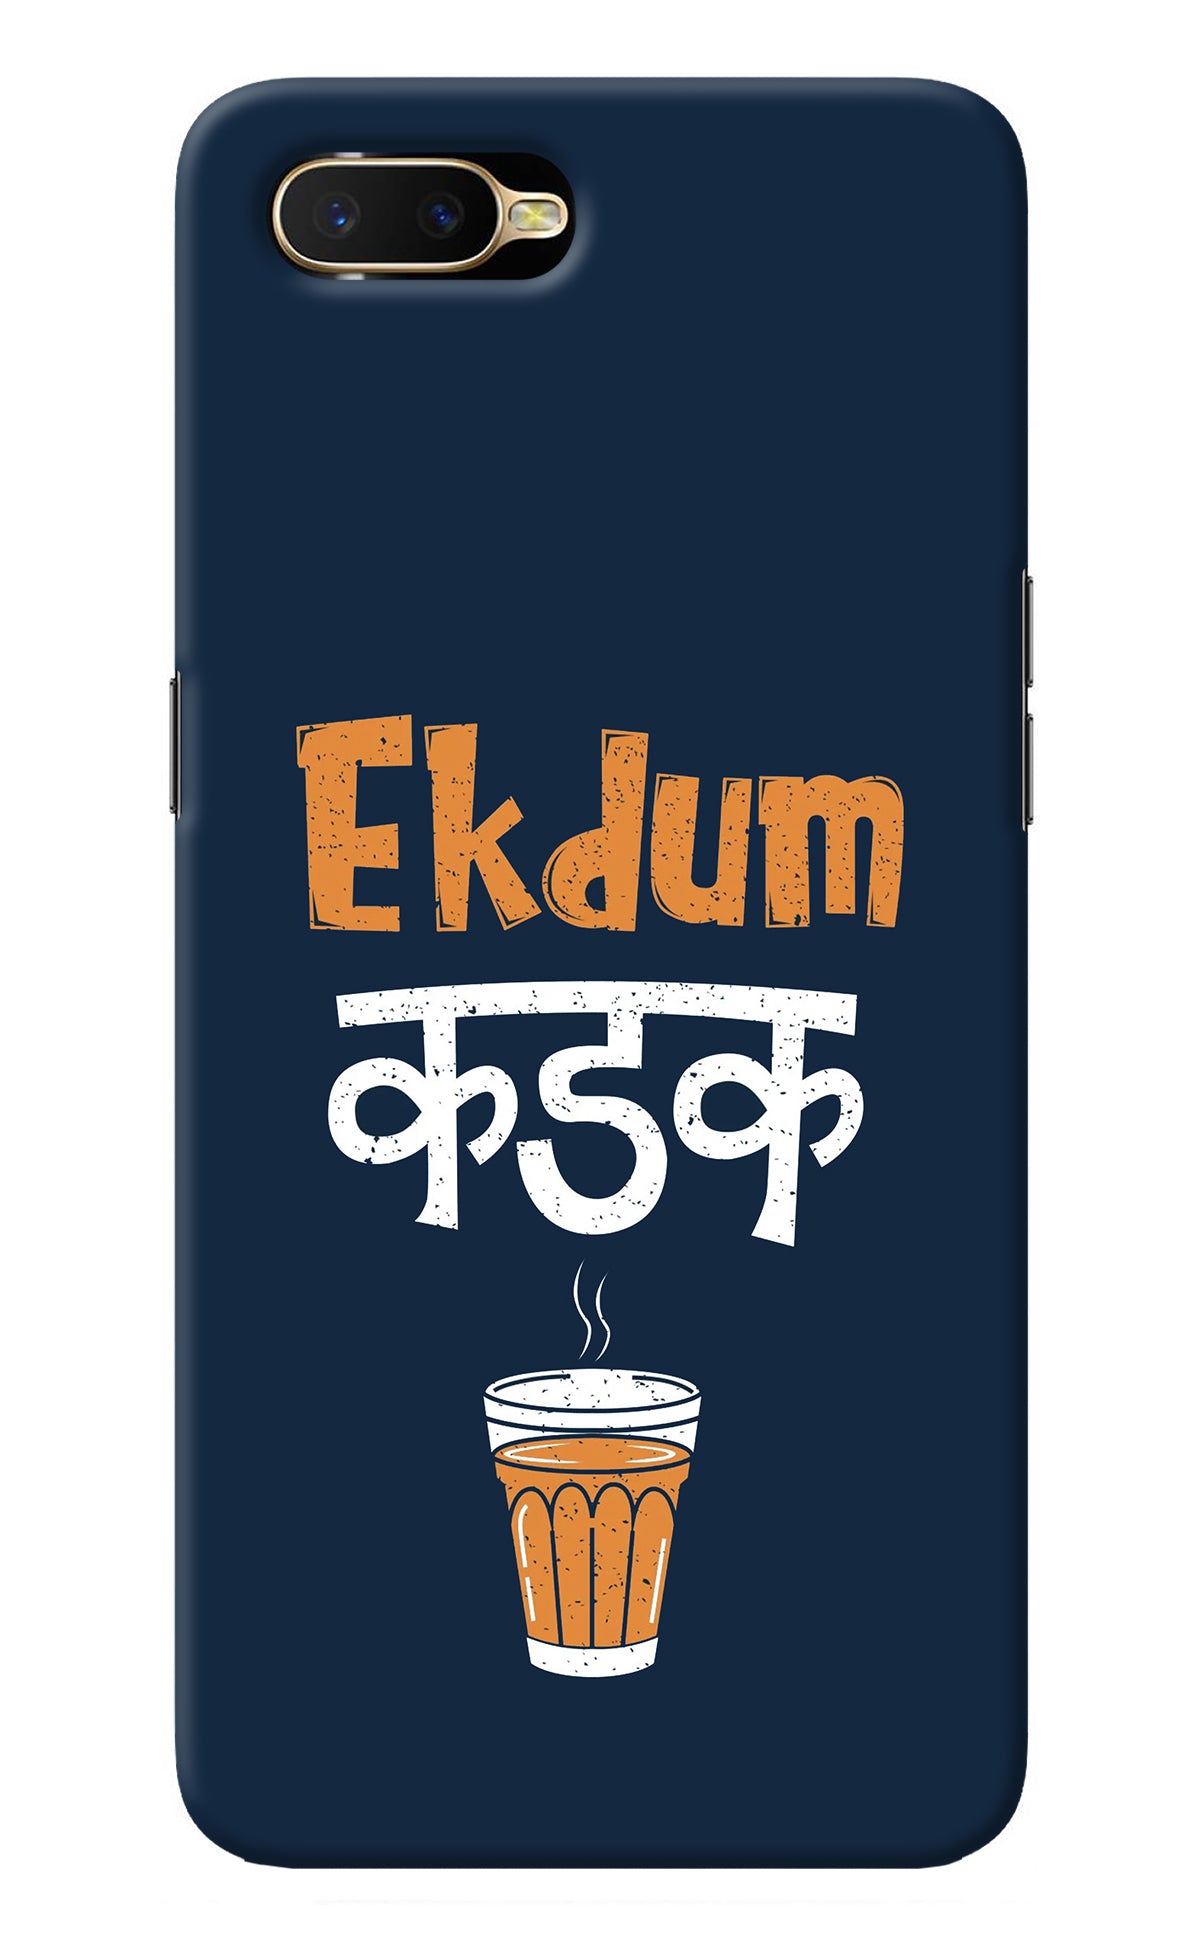 Ekdum Kadak Chai Oppo K1 Back Cover